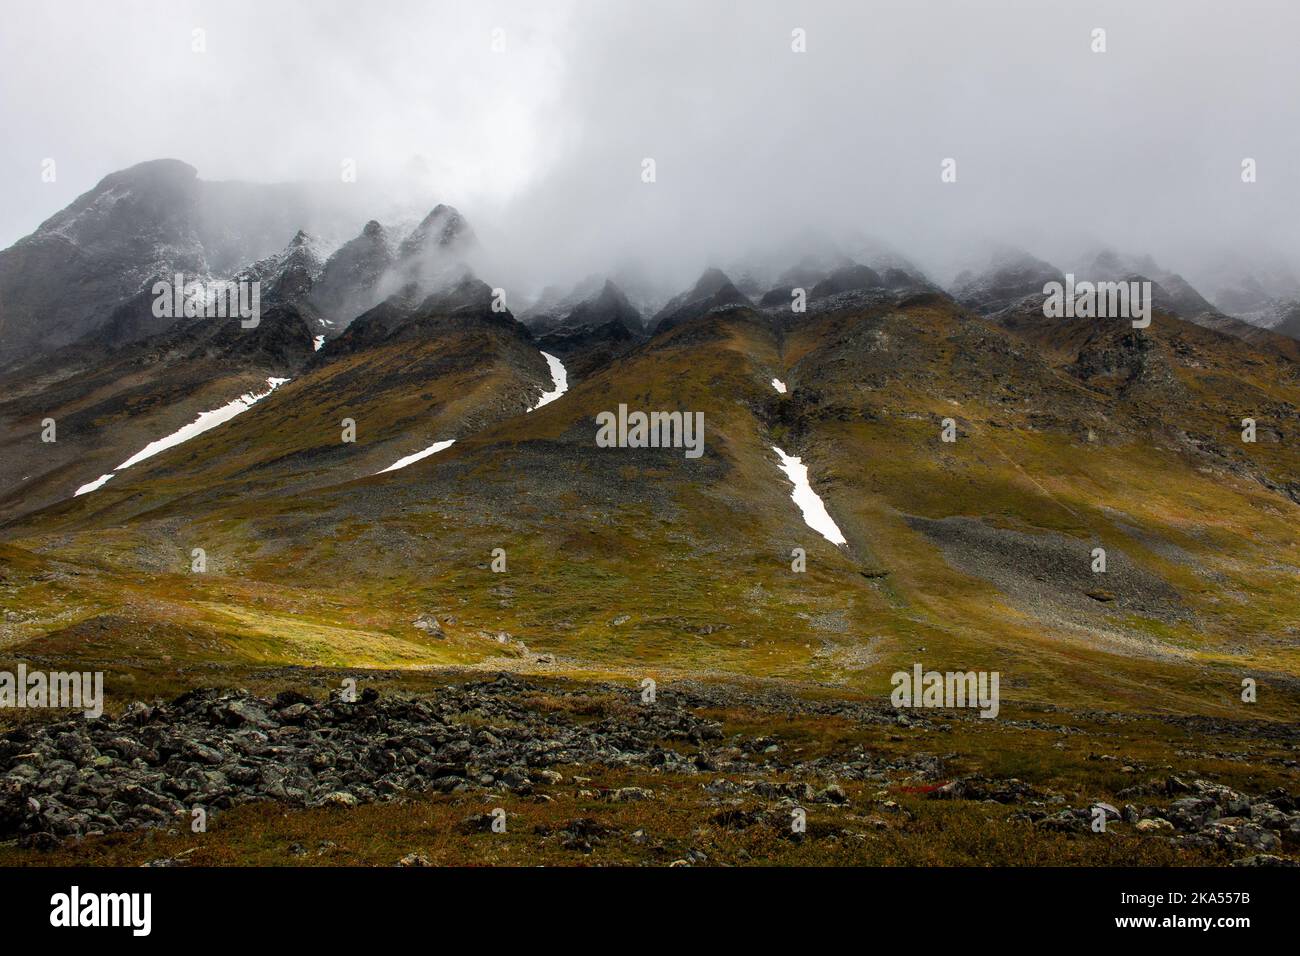 Ein stacheliger Berghang, der in einer Wolke in der Nähe des Wanderweges zwischen Vistas und Nallo-Hütten, Lappland, Schweden, gefangen ist Stockfoto